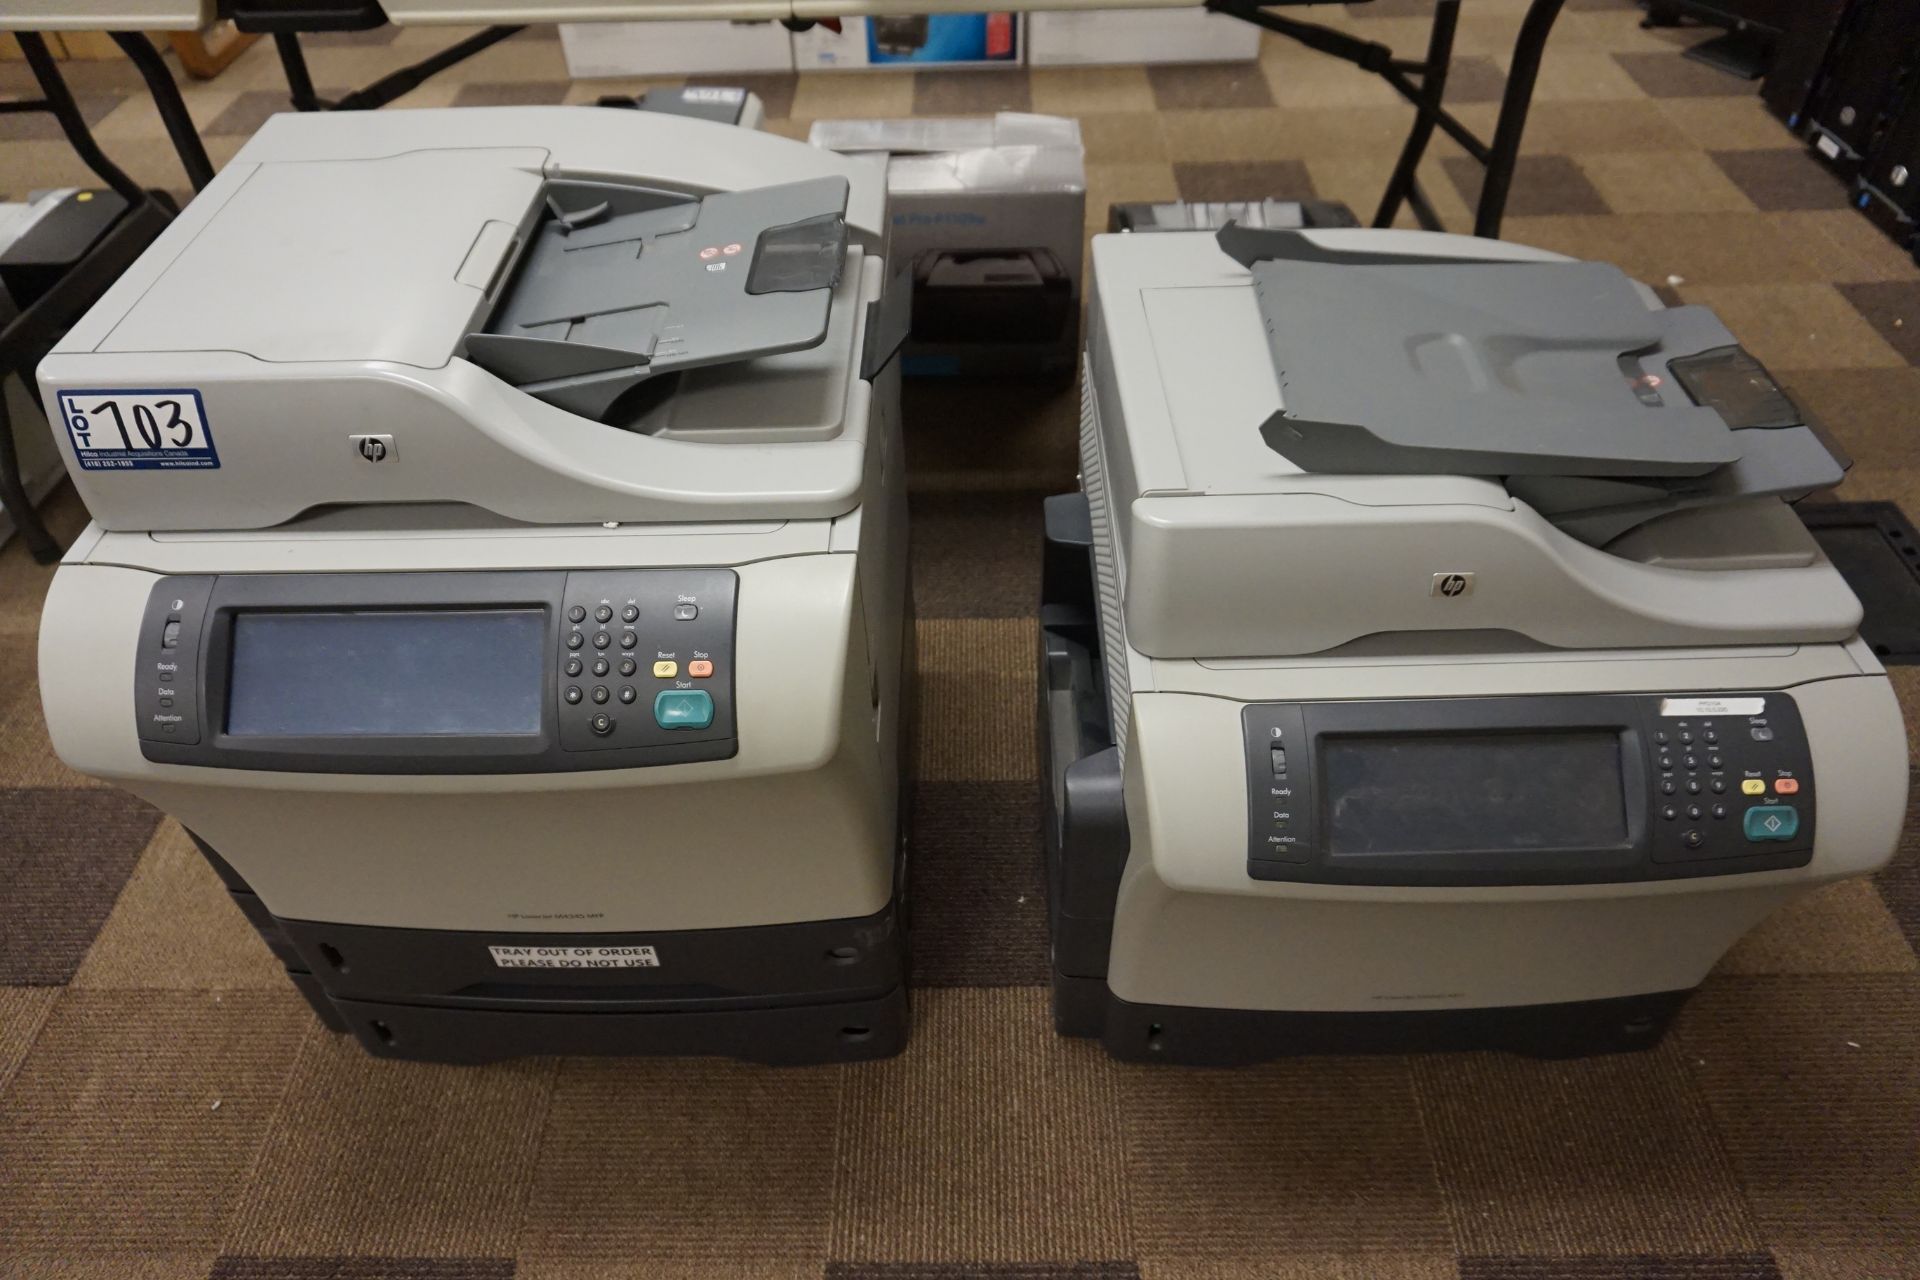 HP Model M4345 MFP & Color LaserJet CM2320 FX1 MFP Printers